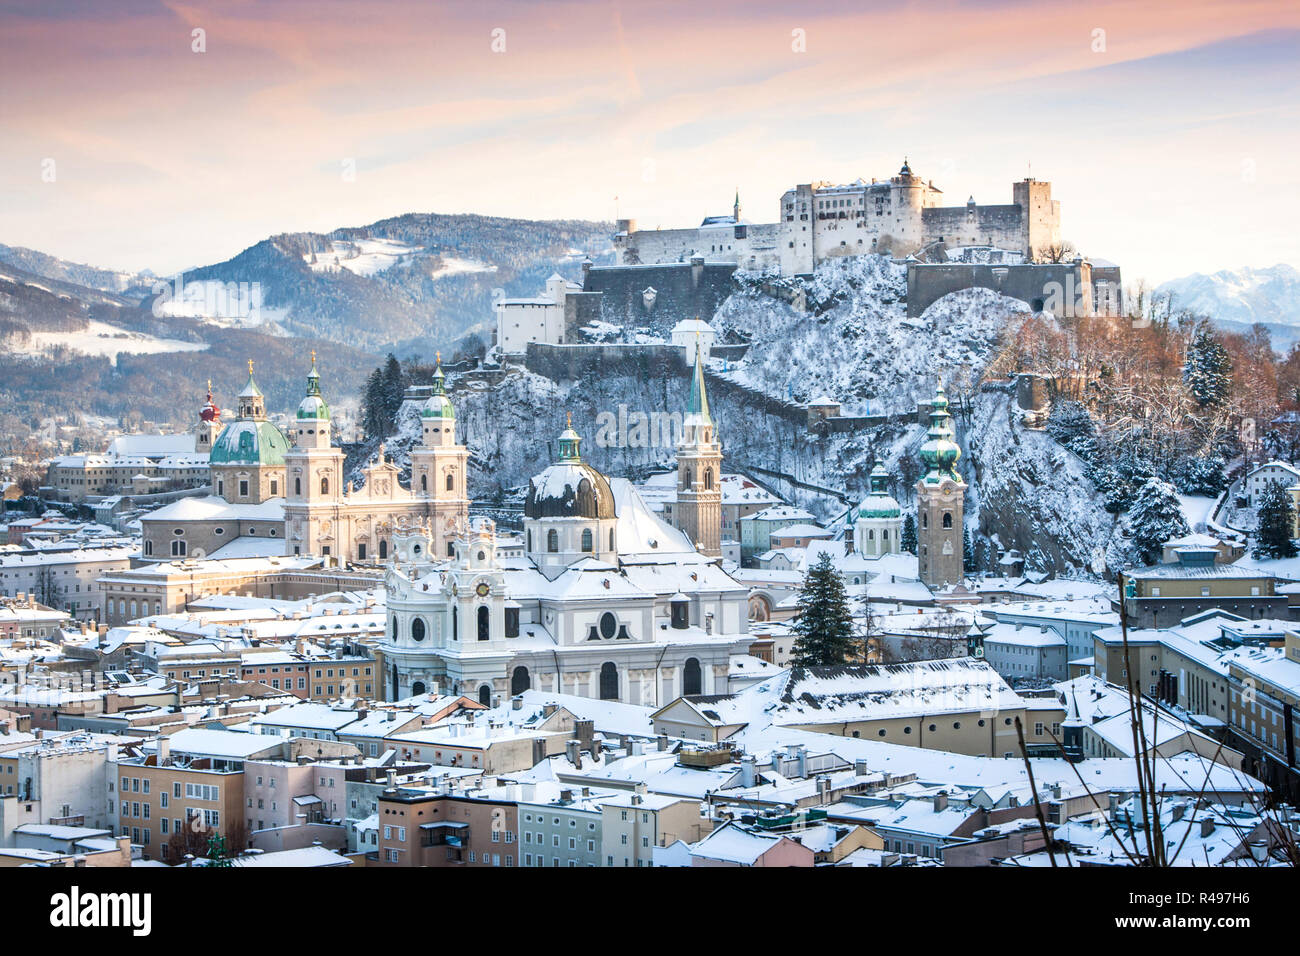 Bellissima vista del centro storico della città di Salisburgo con il Festung Hohensalzburg in inverno, Salzburger Land, Austria Foto Stock